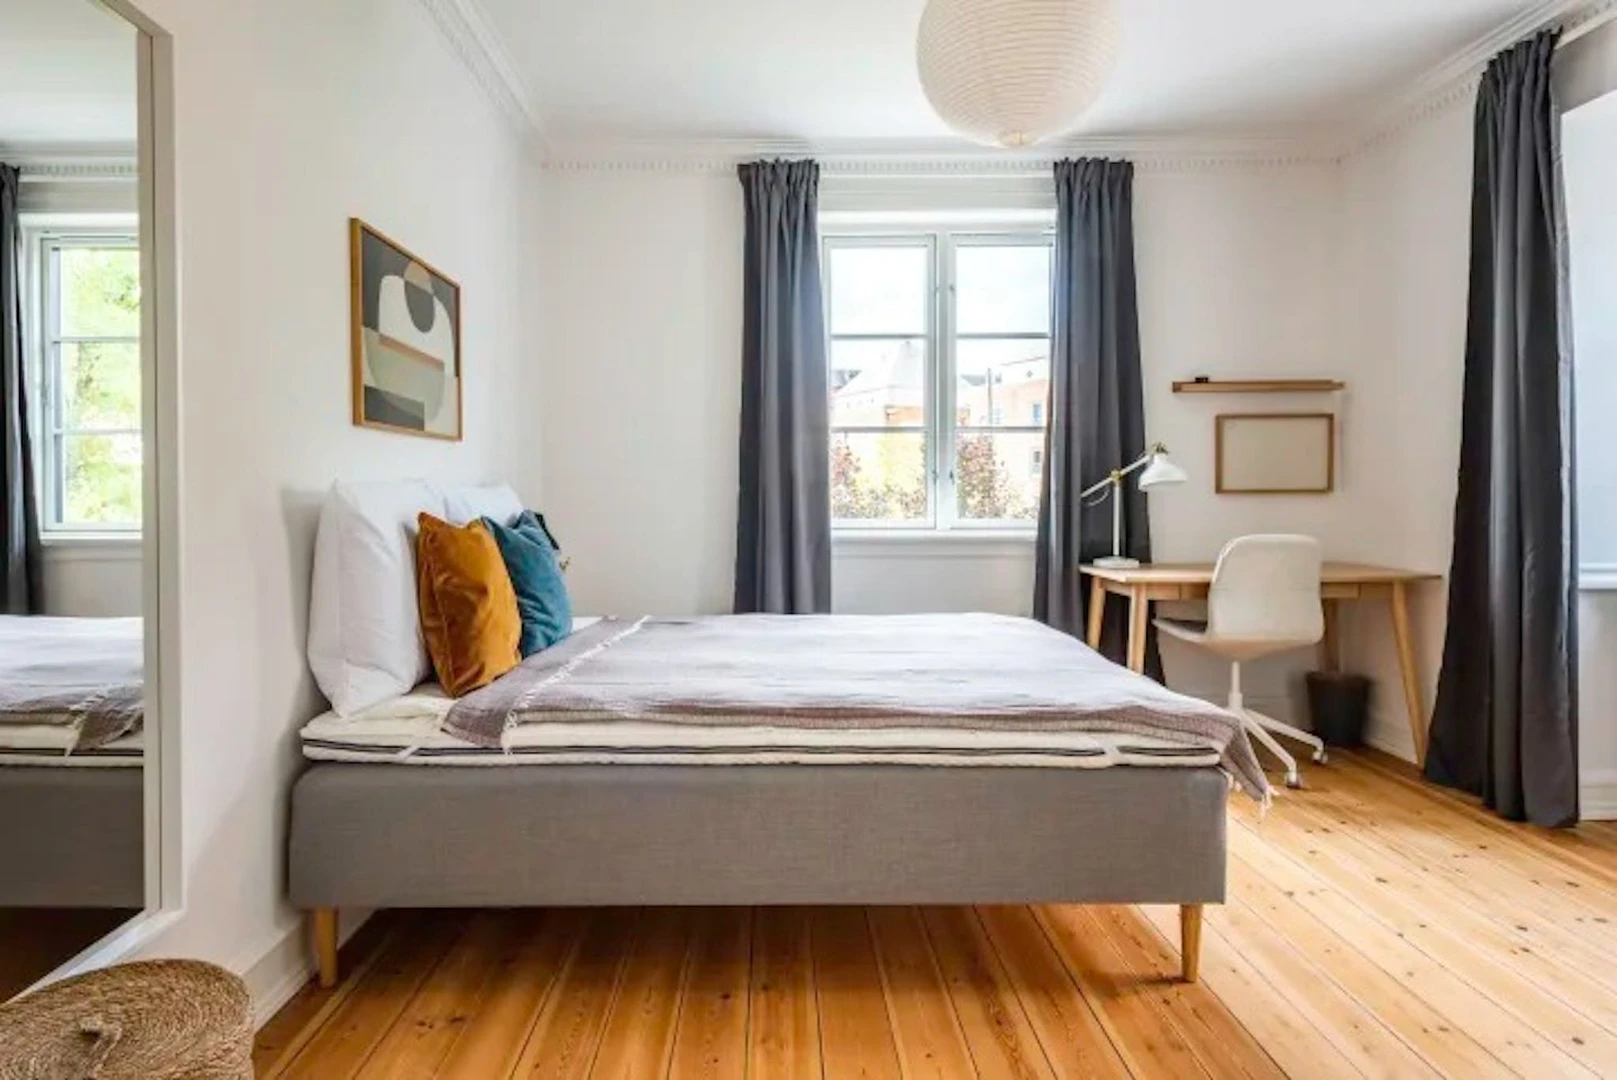 Alquiler de habitaciones por meses en Copenhague